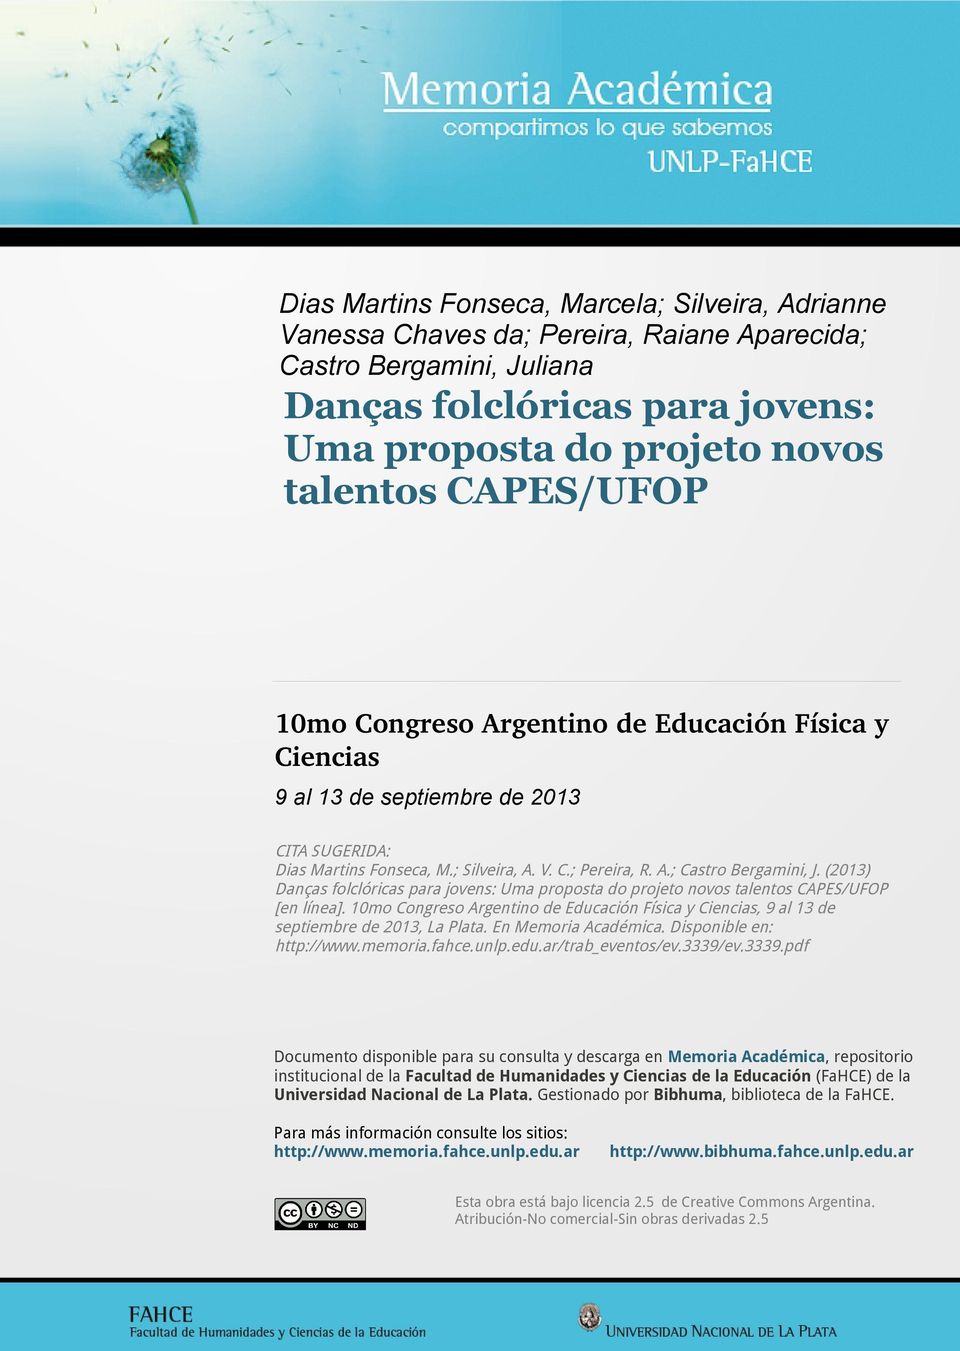 (2013) Danças folclóricas para jovens: Uma proposta do projeto novos talentos CAPES/UFOP [en línea]. 10mo Congreso Argentino de Educación Física y Ciencias, 9 al 13 de septiembre de 2013, La Plata.